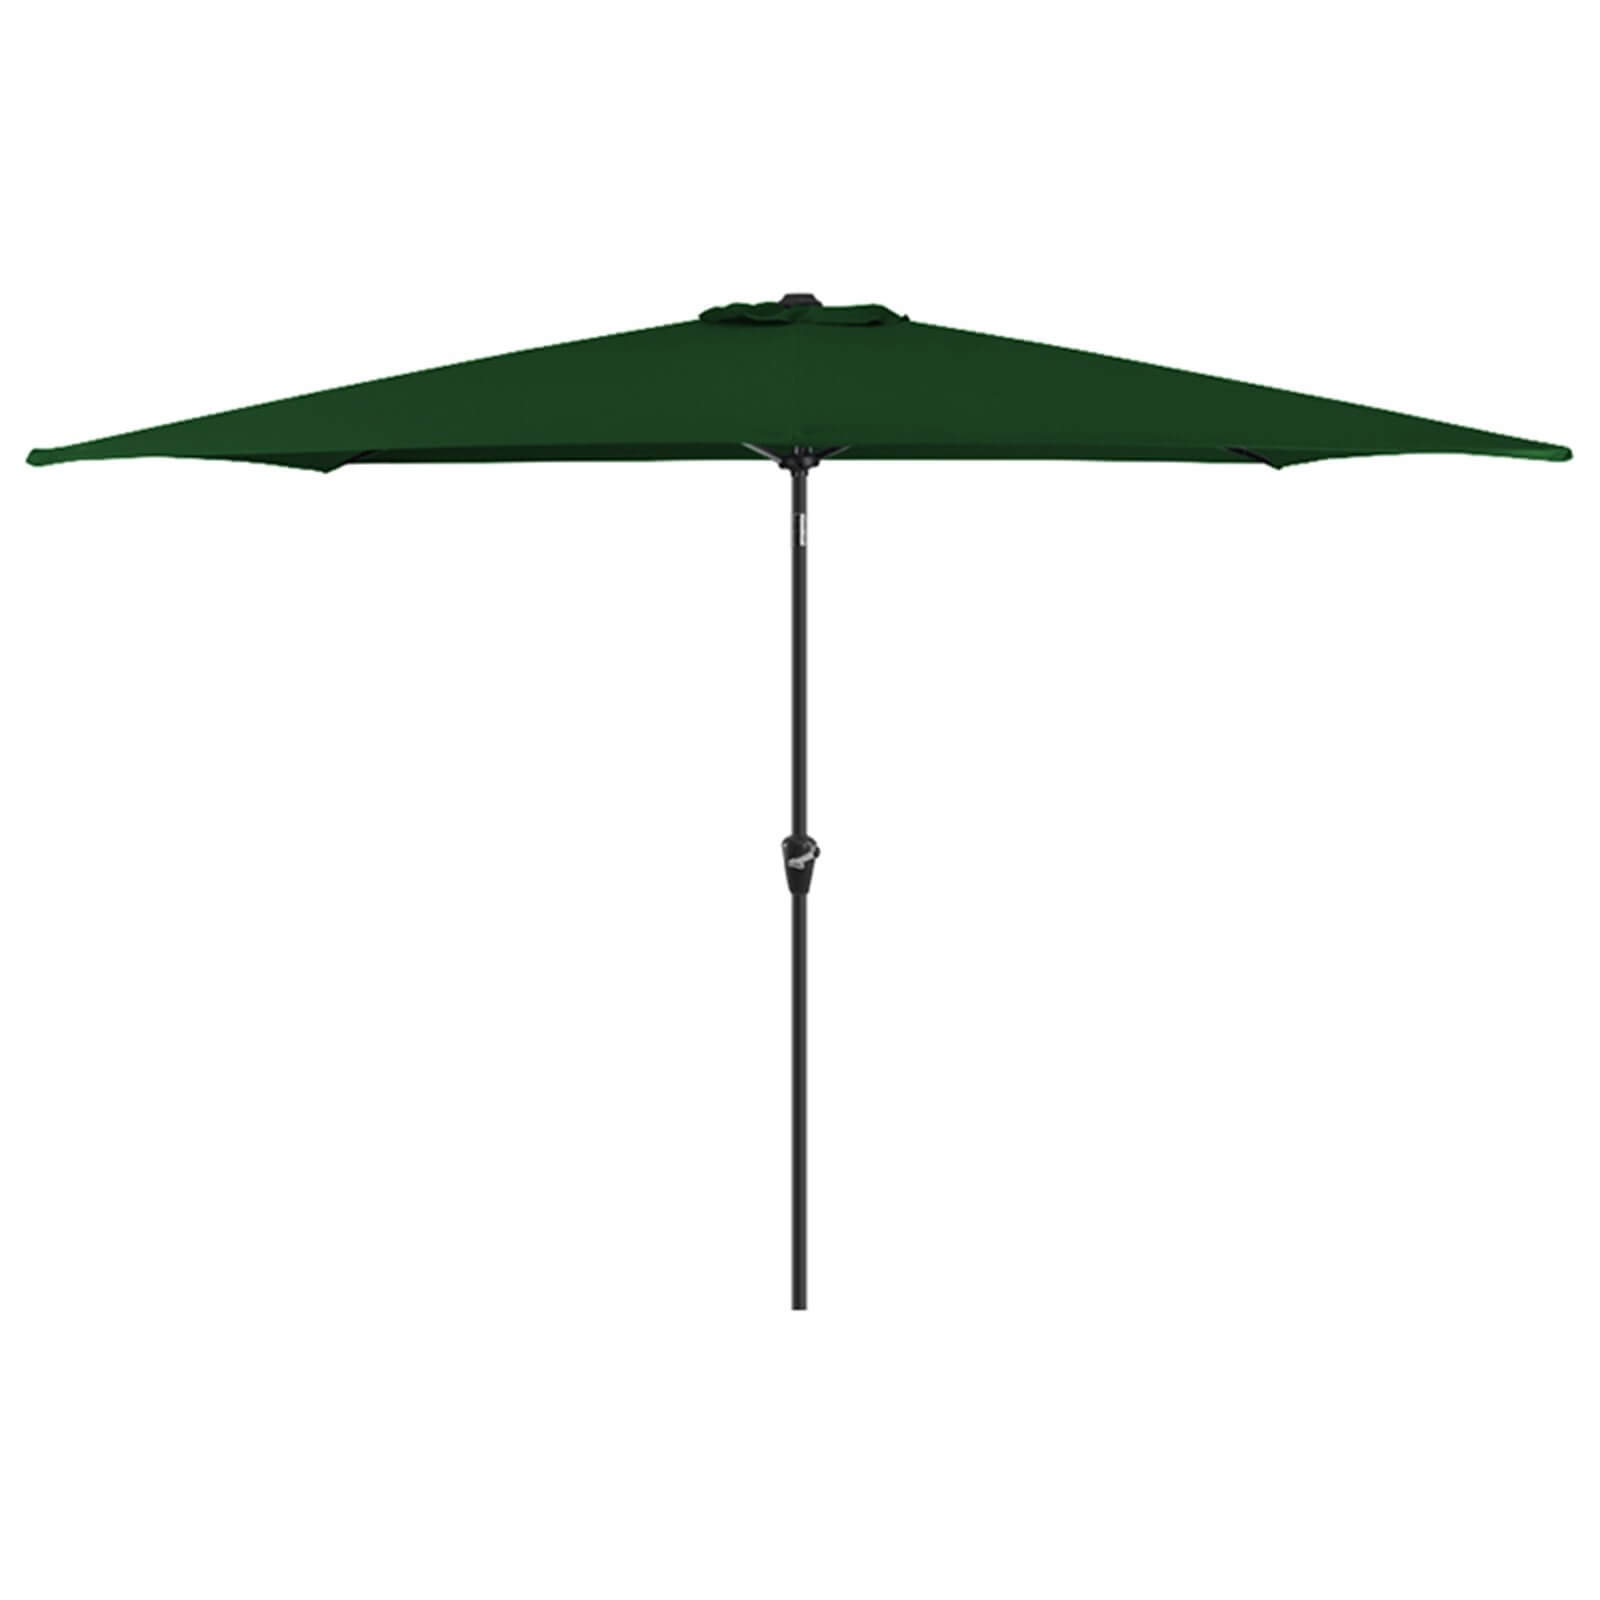 Aluminium Umbrella Parasol - 3x2m - Green